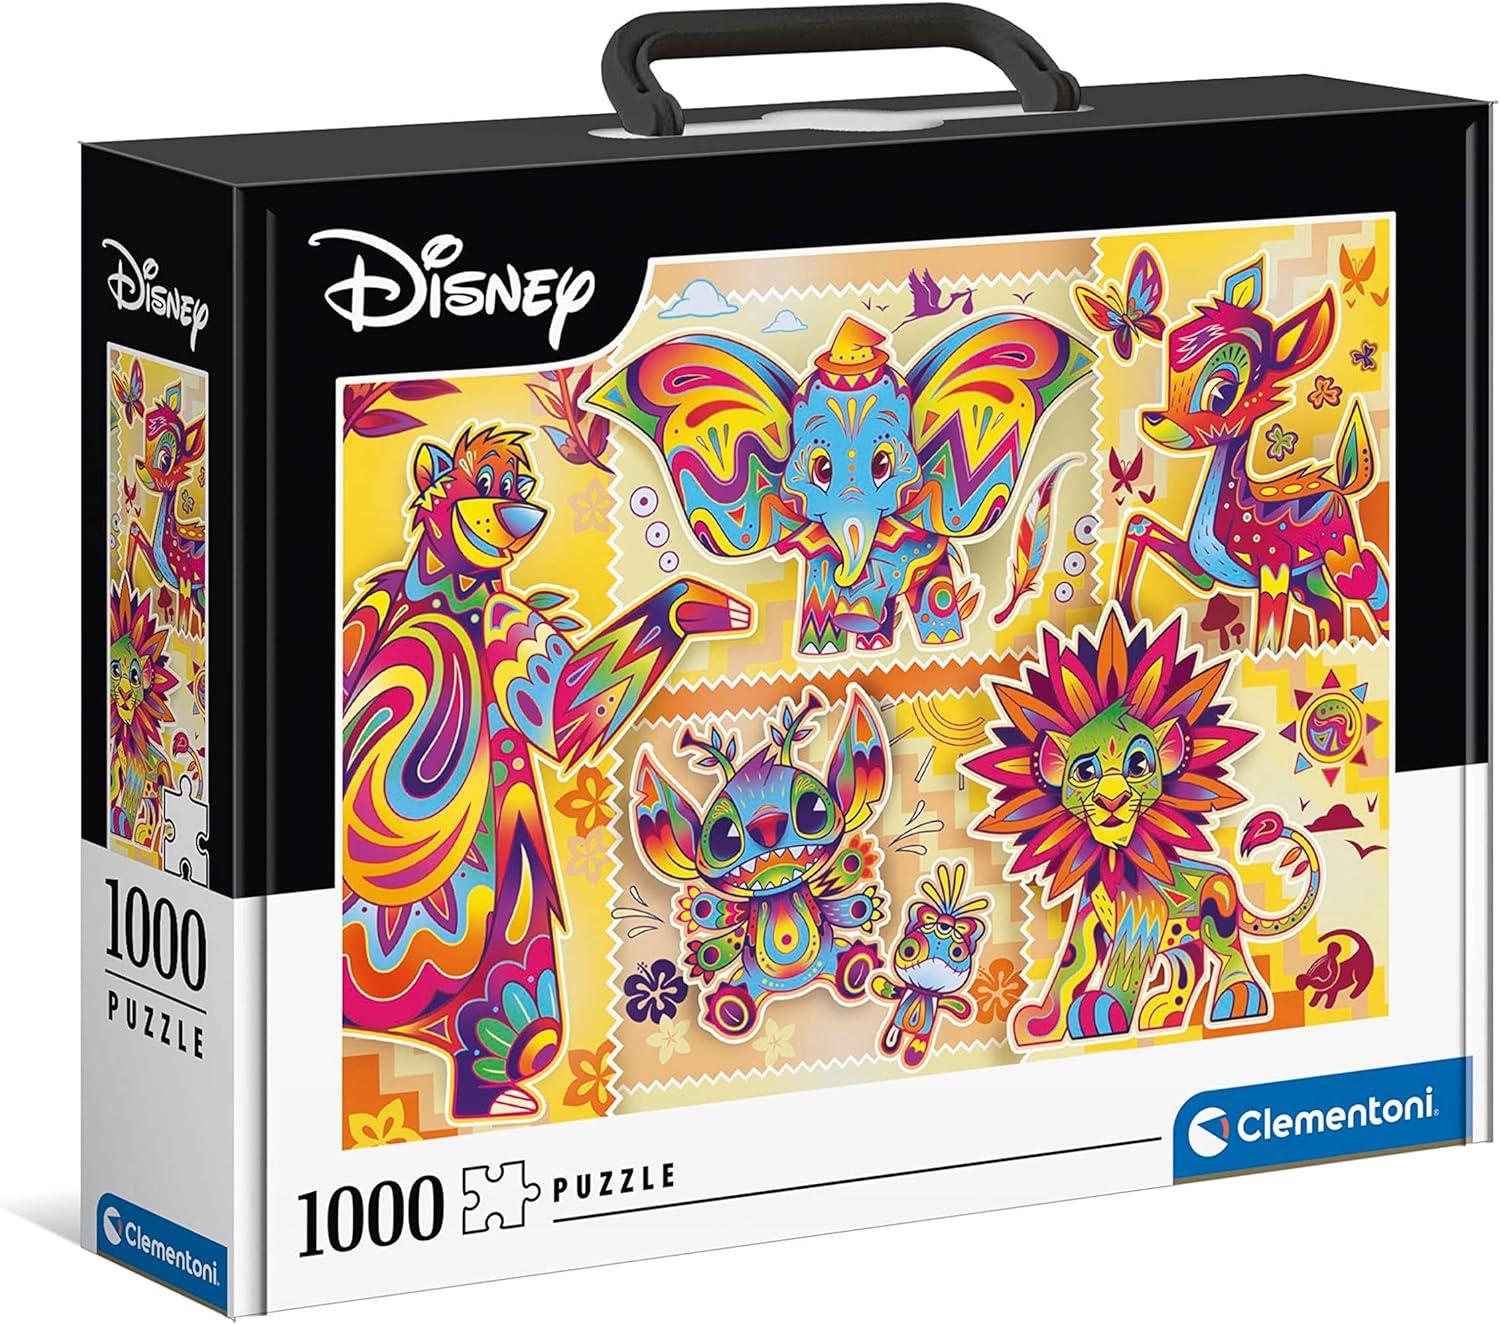 Clementoni Disney Classic Briefcase Jigsaw Puzzle (1000 Pieces)